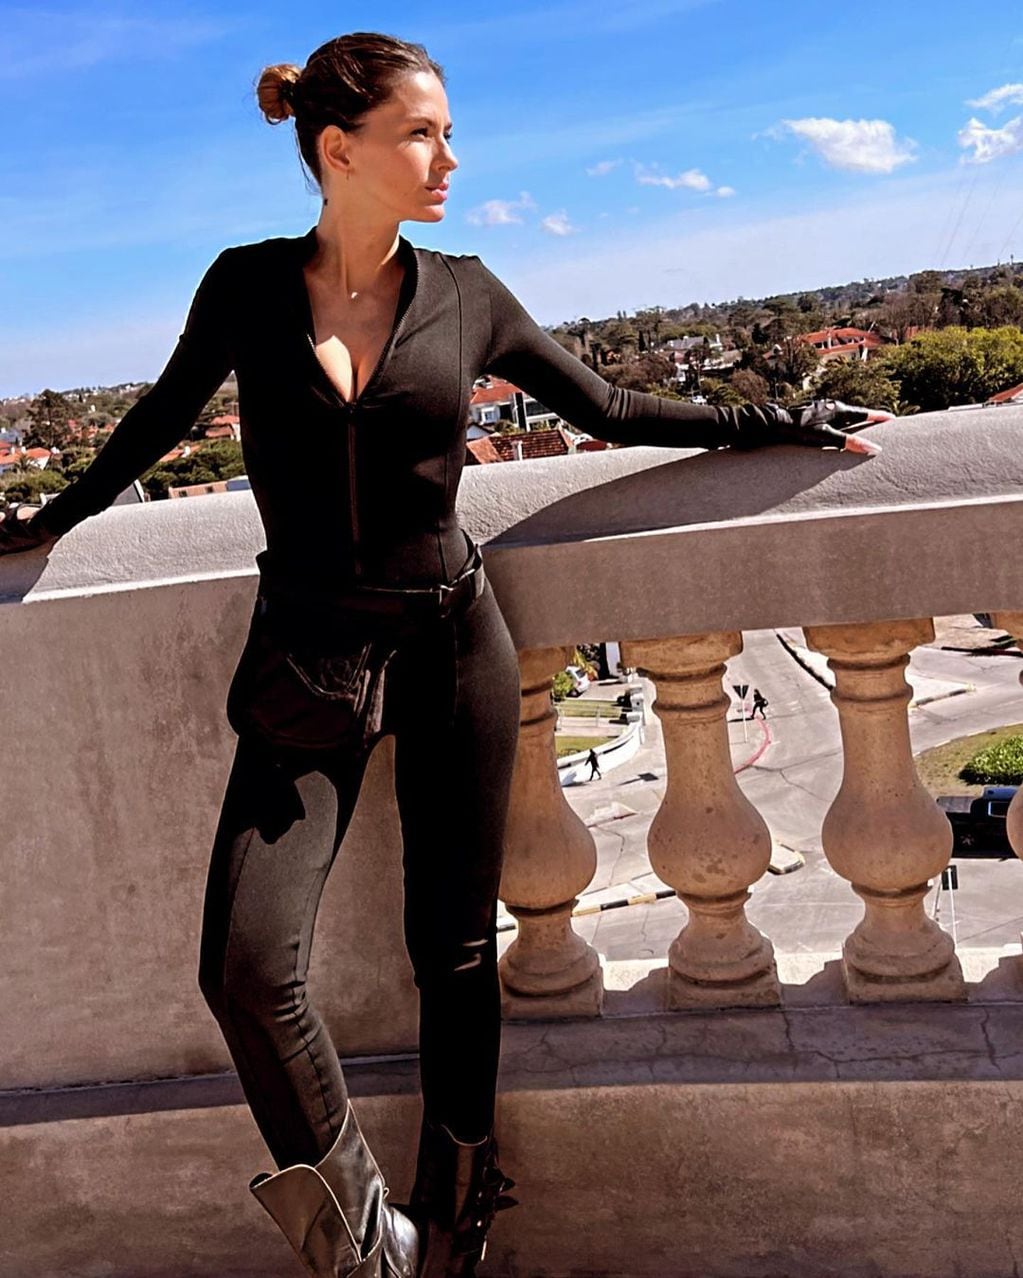 Al estilo “Viuda Negra”, la China Suárez posó en catsuit negro durante la filmación de su nueva película.